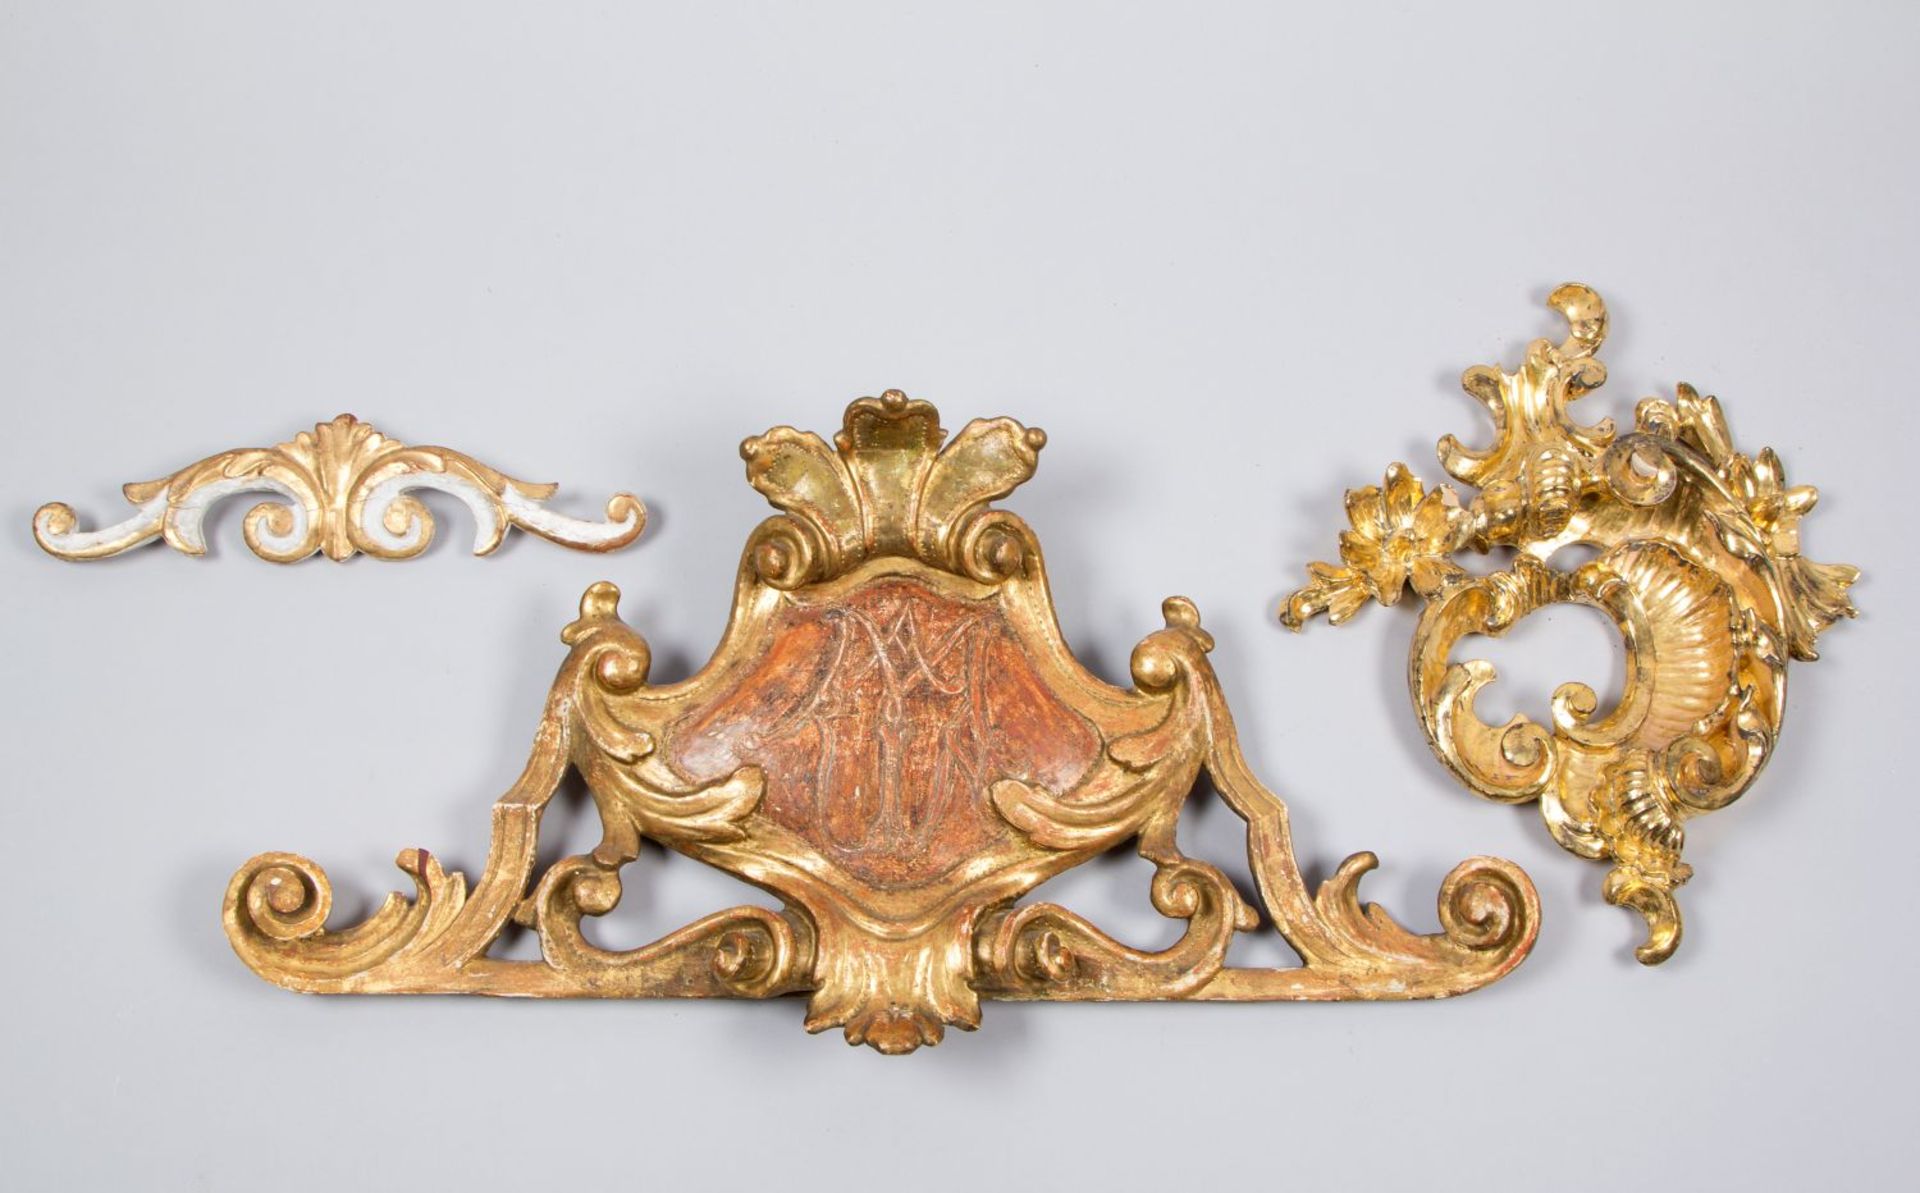 Drei Schnitzornamente Holz, geschnitzt. Farb- und Goldfassung. Versch. Formen und Dekore. B. bis 66 